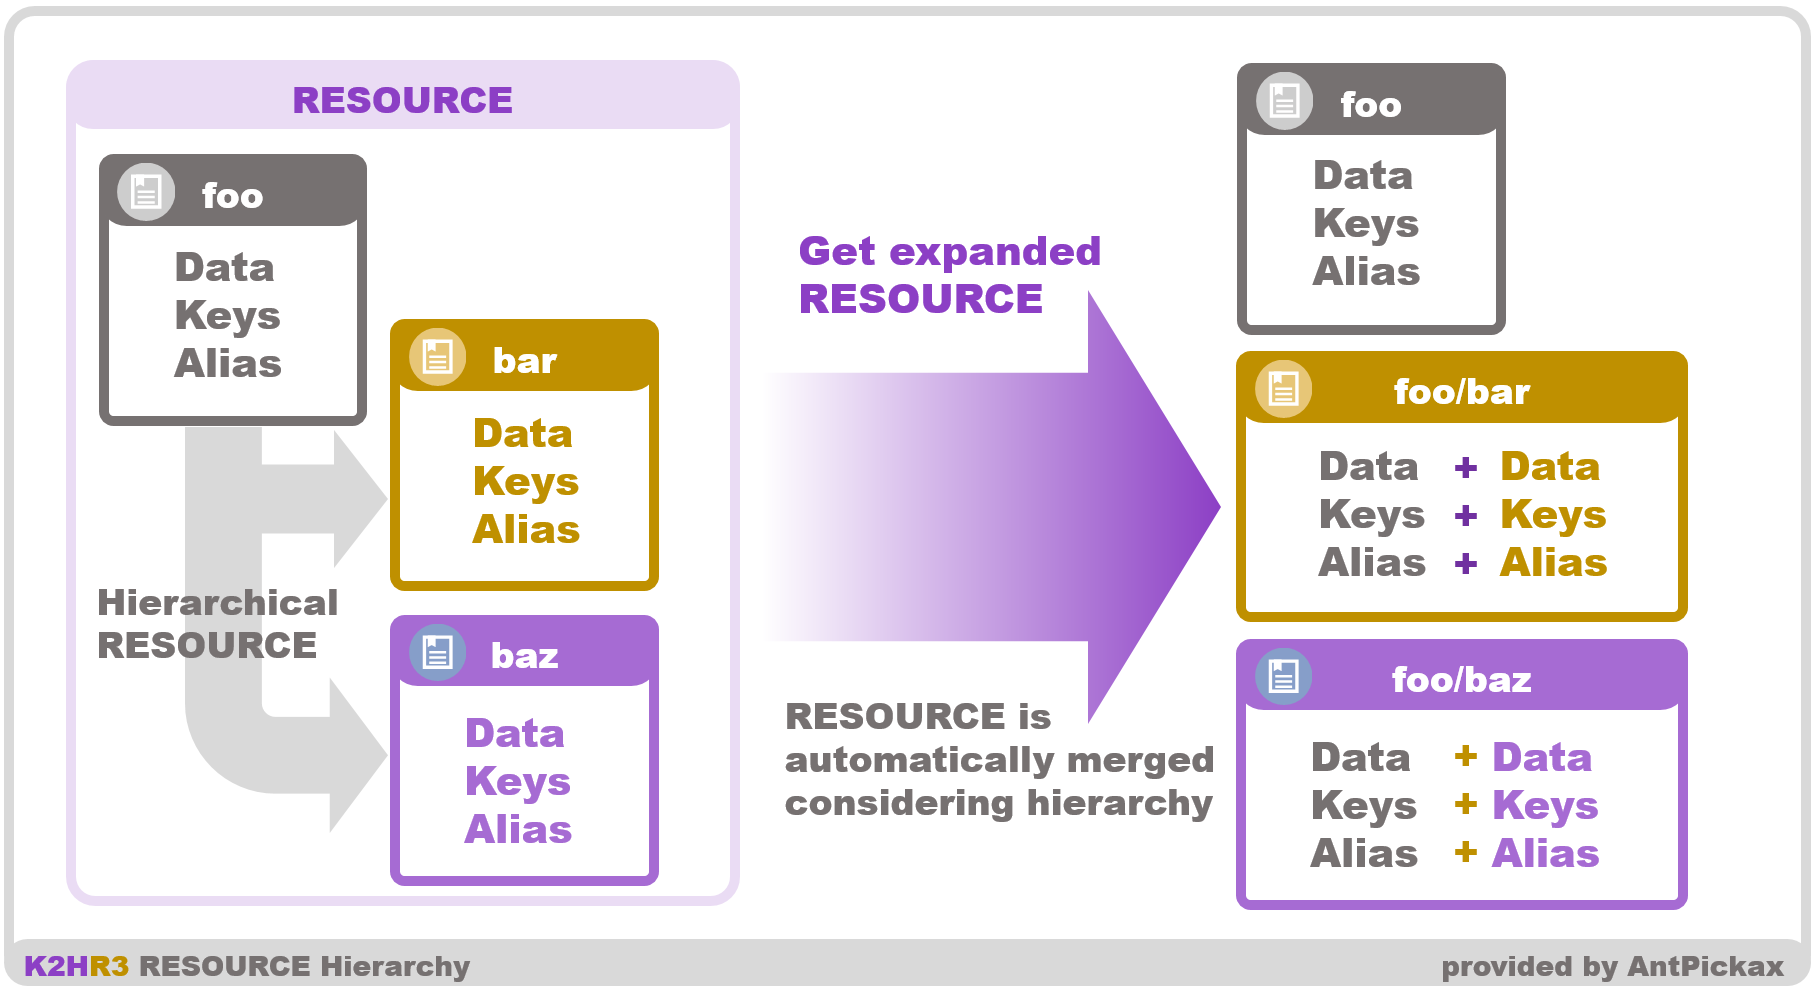 K2HR3 Usage - Resource hierarchy